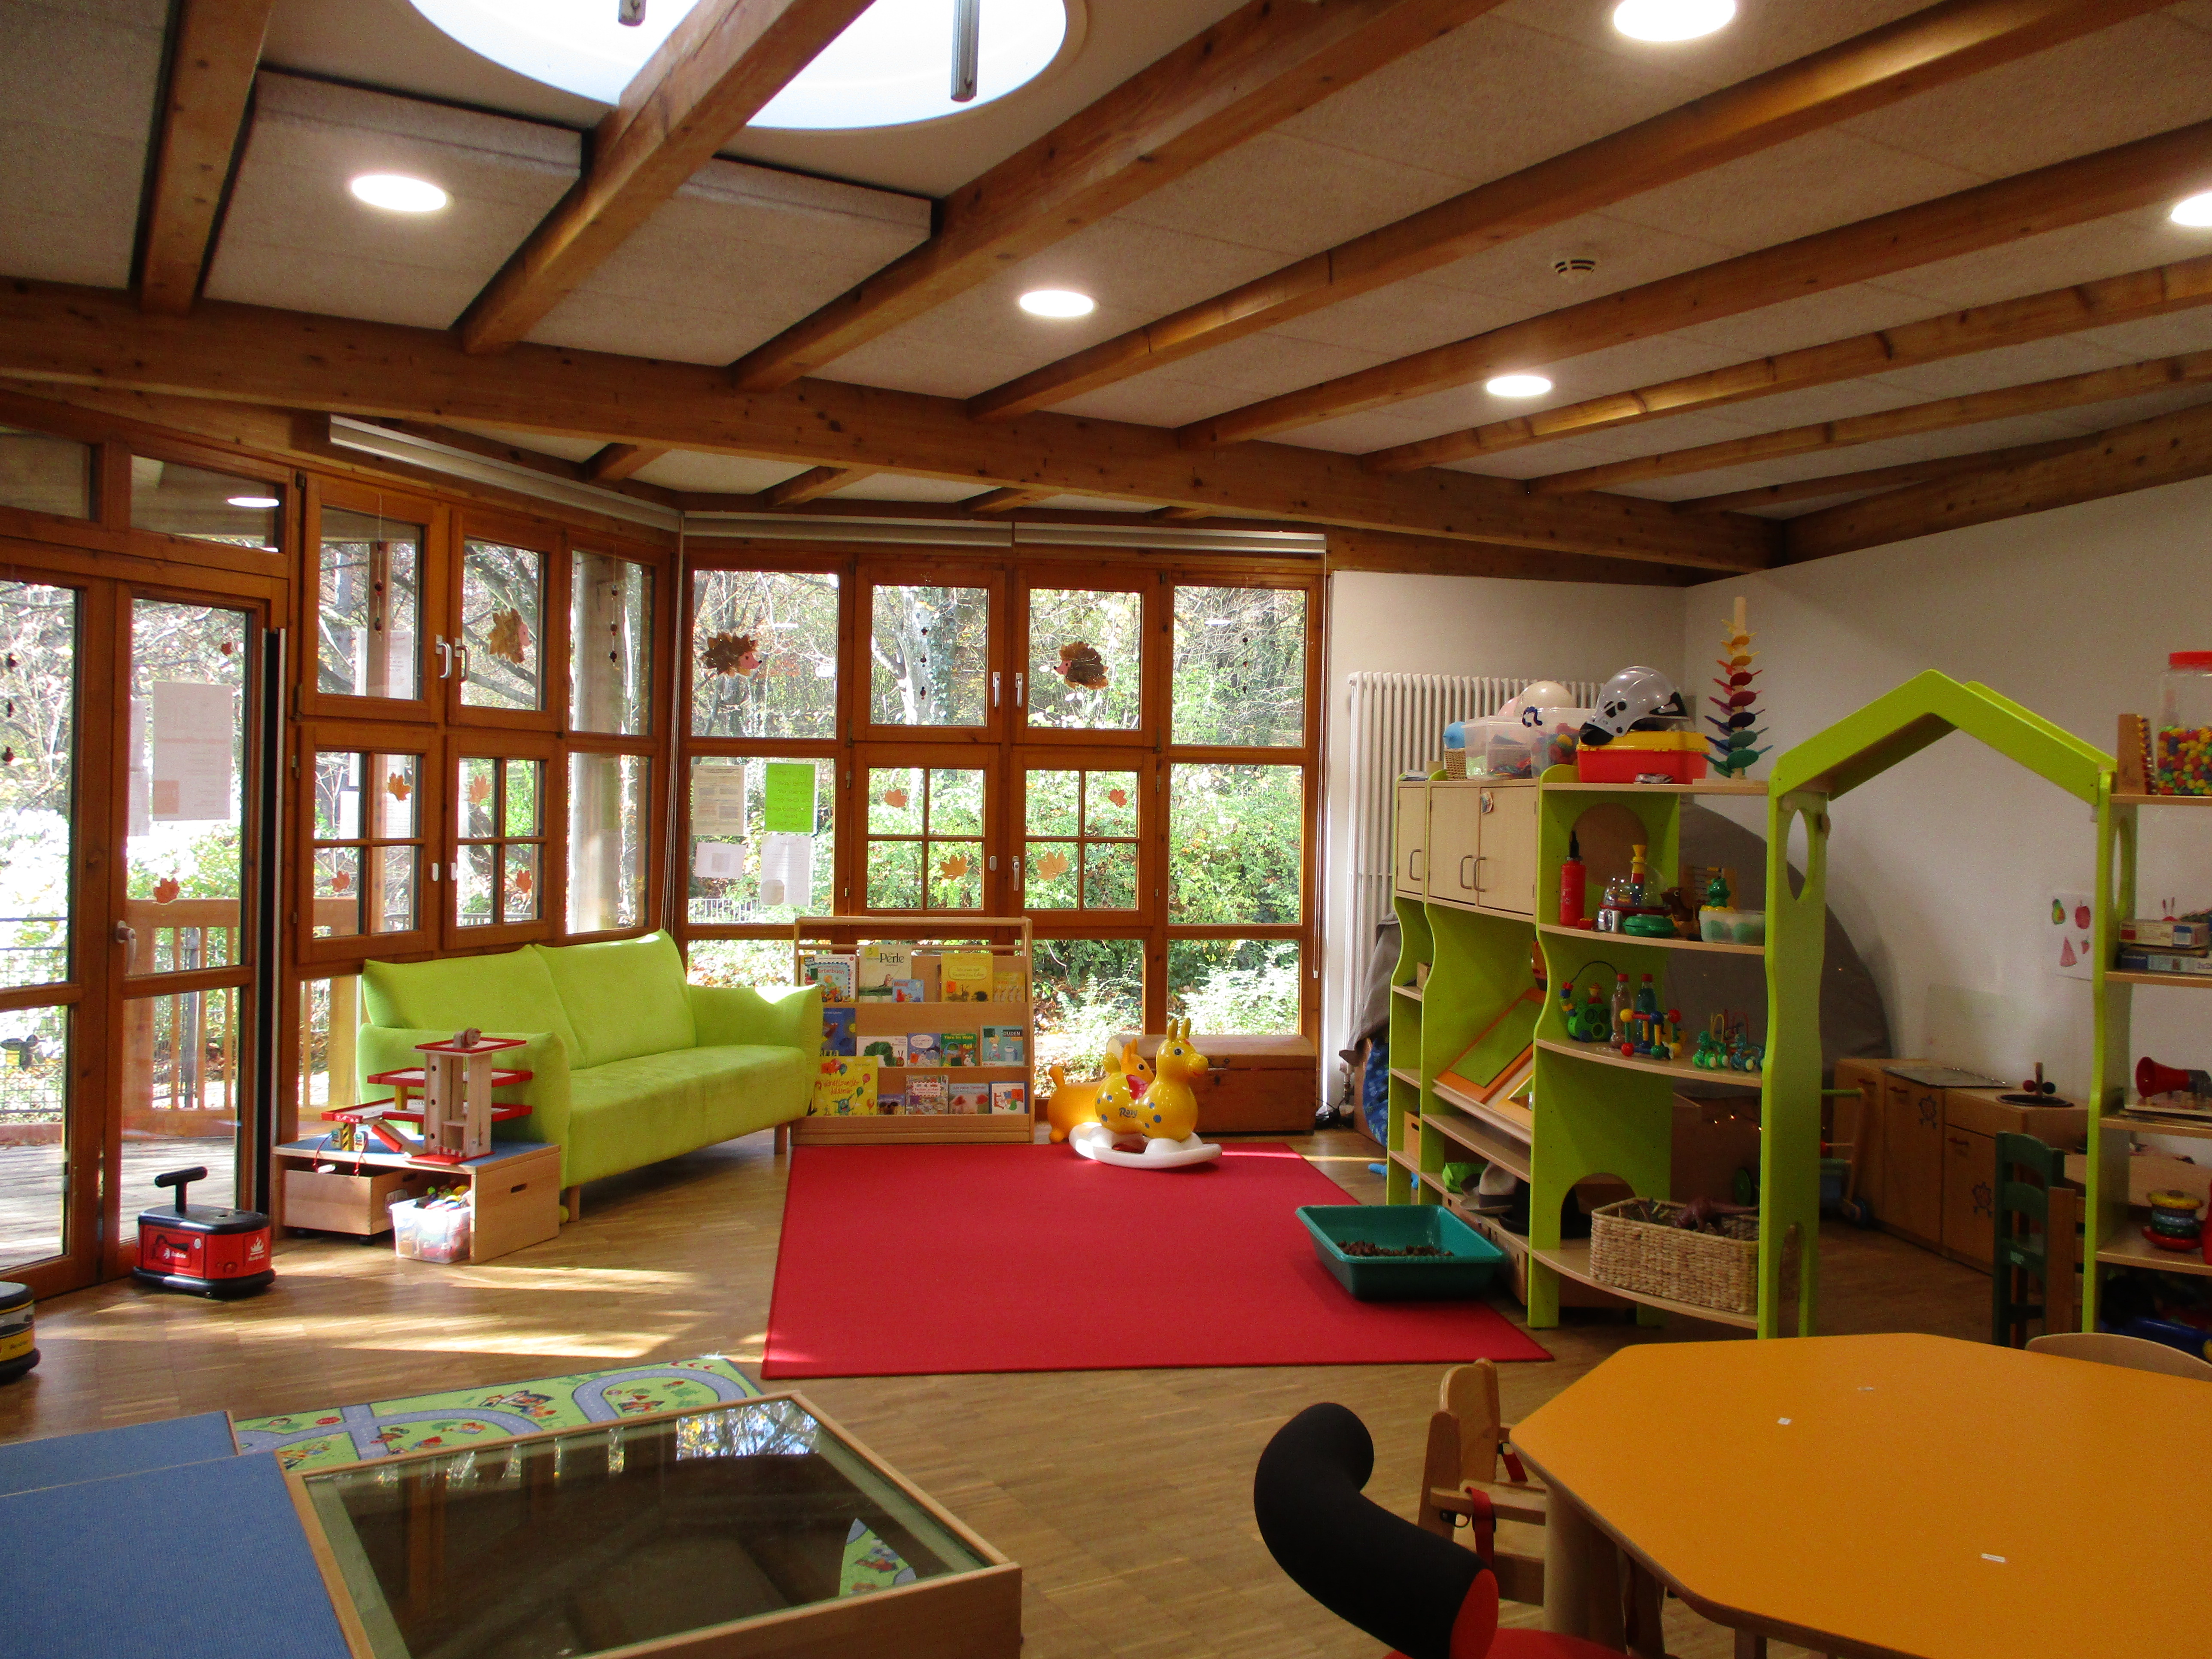 Der Krippenraum ist unterteilt in eine Leseecke mit grünem Sofa, mittig eine Freifläche zum Spielen und hinter einem grünem Regal ist die Rollenspielecke mit Kinderküche.